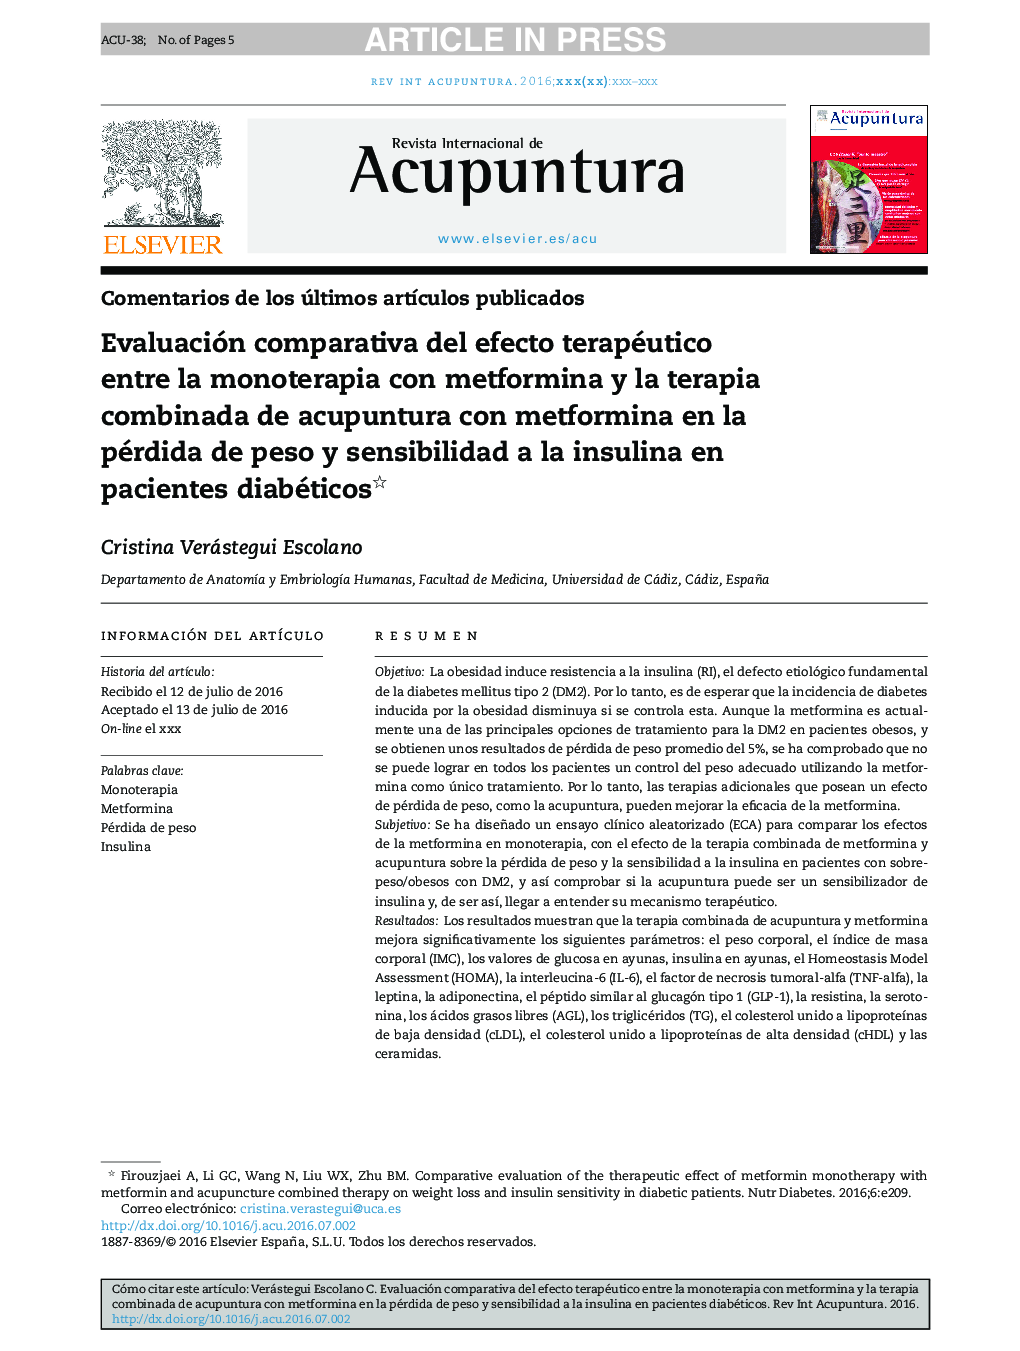 Evaluación comparativa del efecto terapéutico entre la monoterapia con metformina y la terapia combinada de acupuntura con metformina en la pérdida de peso y sensibilidad a la insulina en pacientes diabéticos